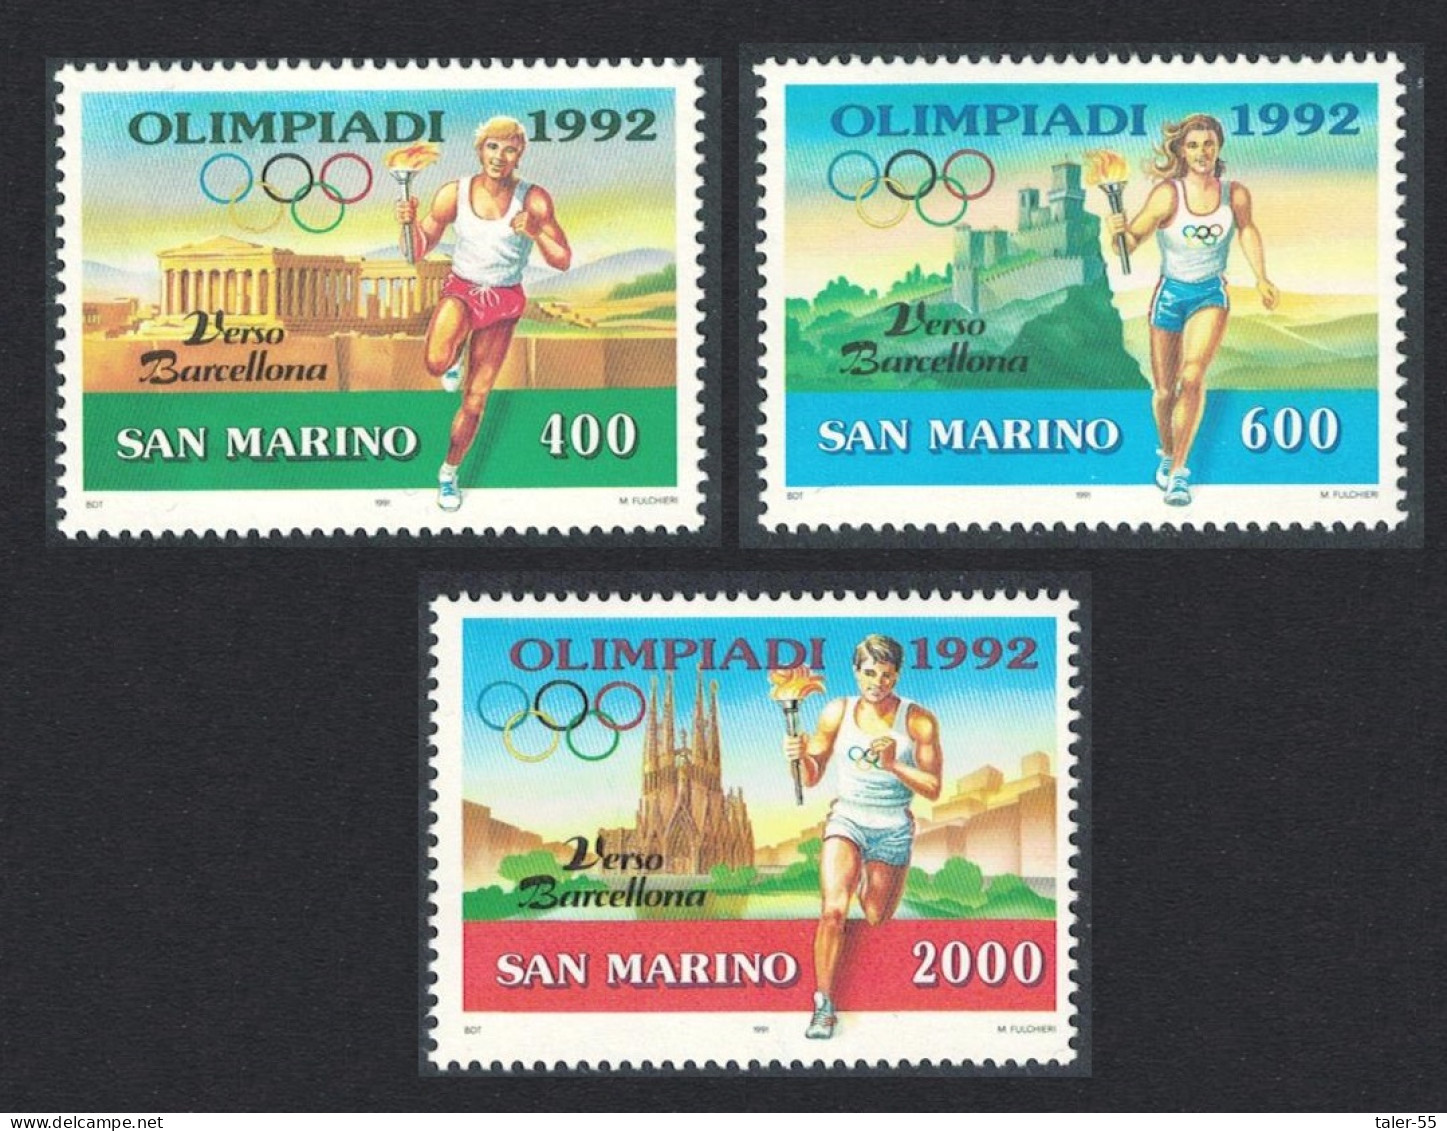 San Marino Olympic Games Barcelona 1992 3v 1991 MNH SG#1398-1400 - Nuevos